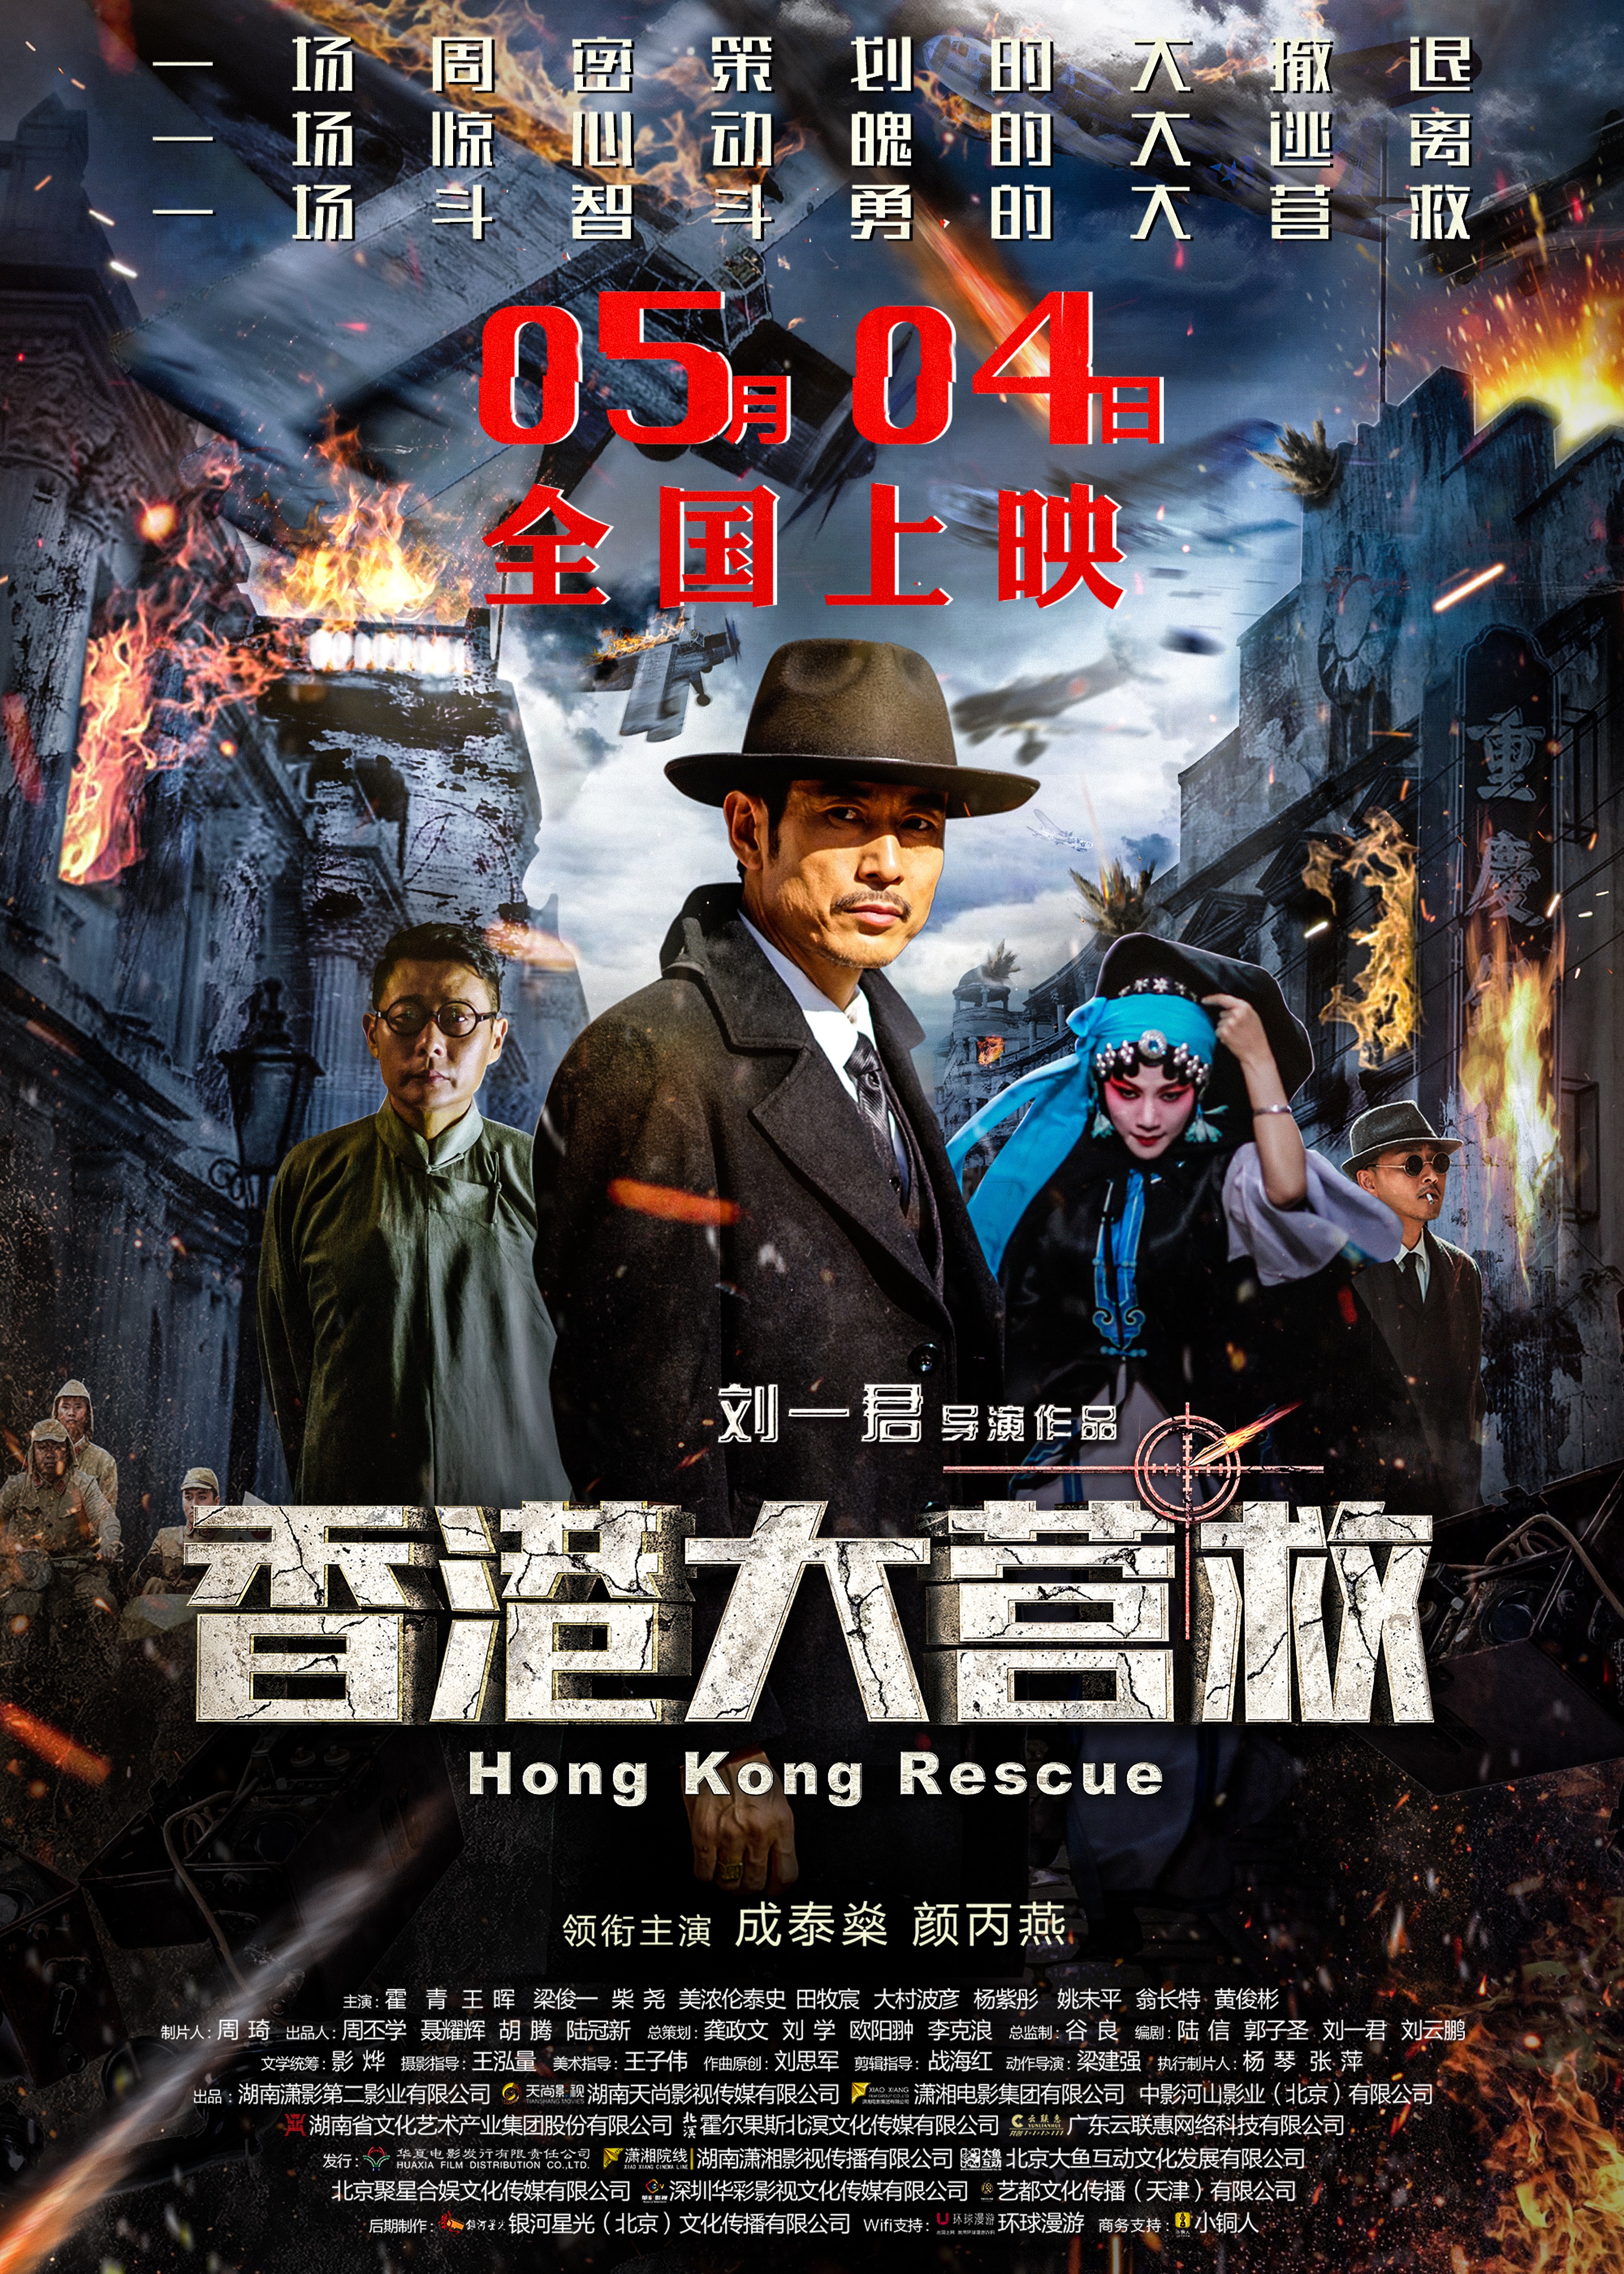 Hong Kong Rescue Main Poster